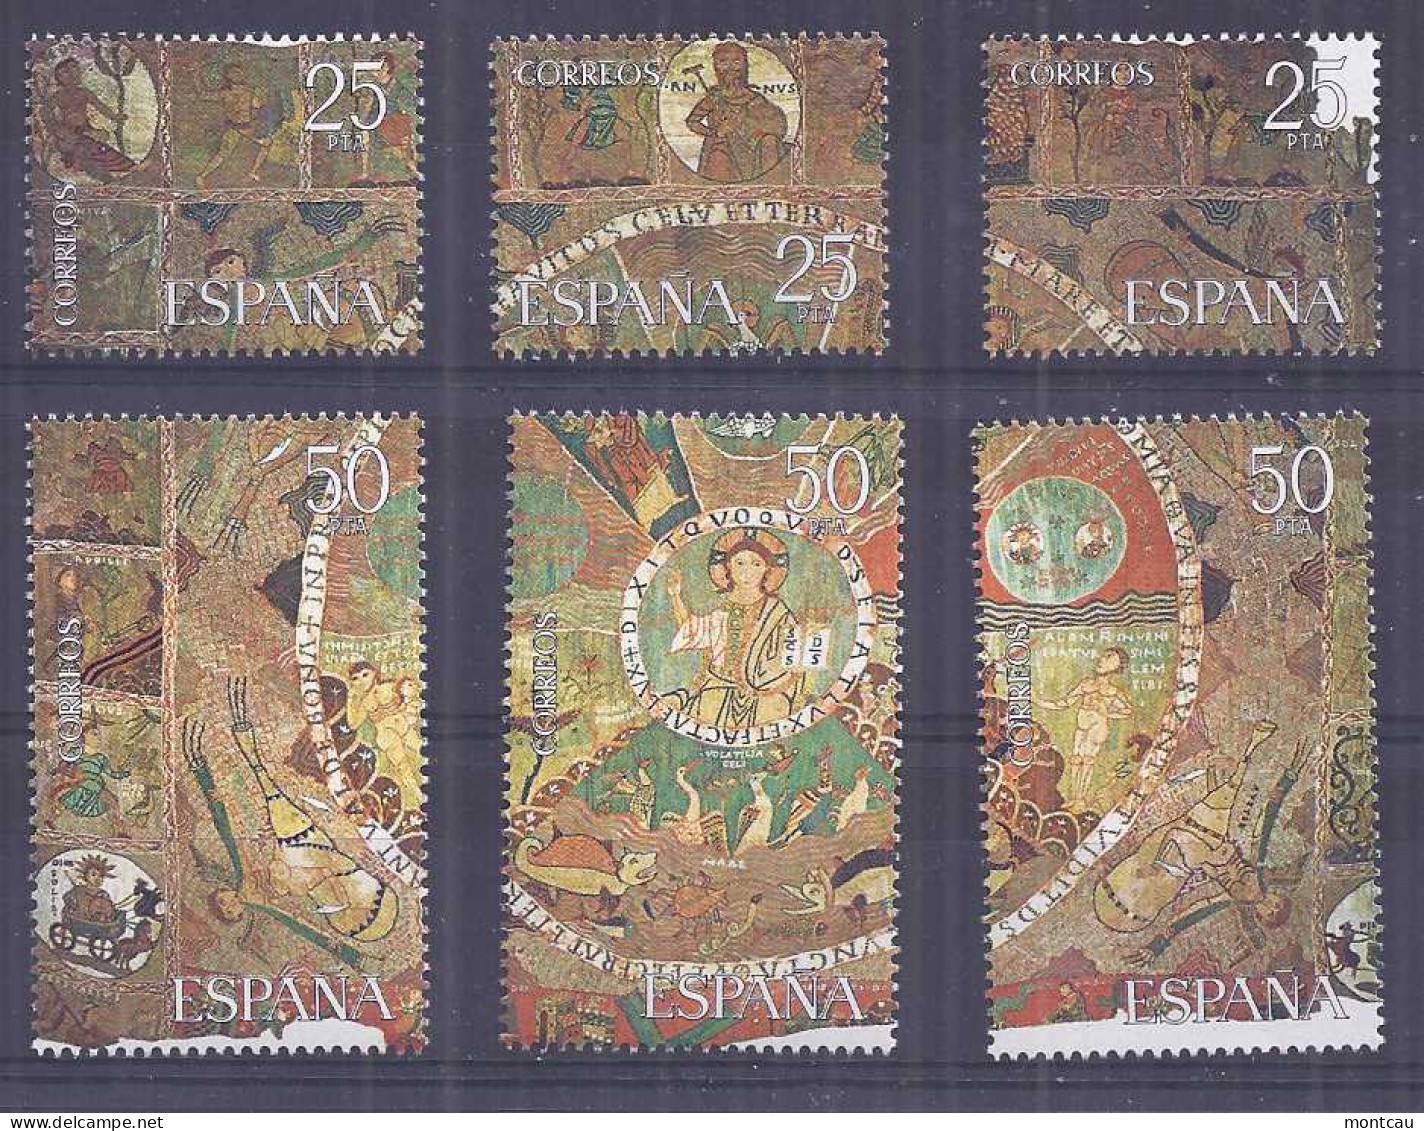 Spain. 1980 -Tapiz De La Creacion Ed 2591 (**) - Sellos - Unused Stamps